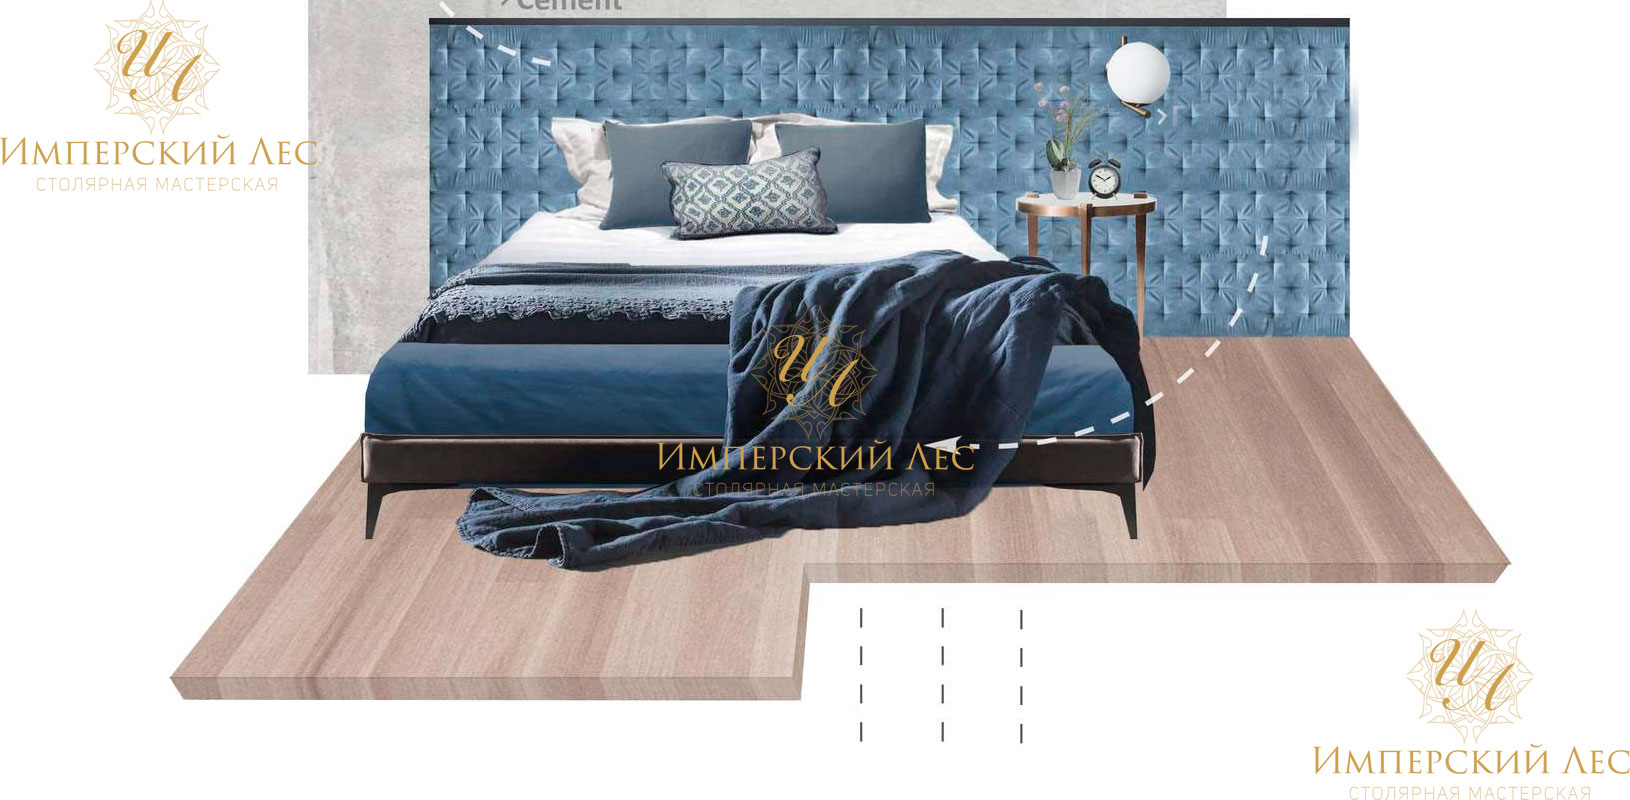 Кровать из массива дерева в оттенках голубого и серого цветов